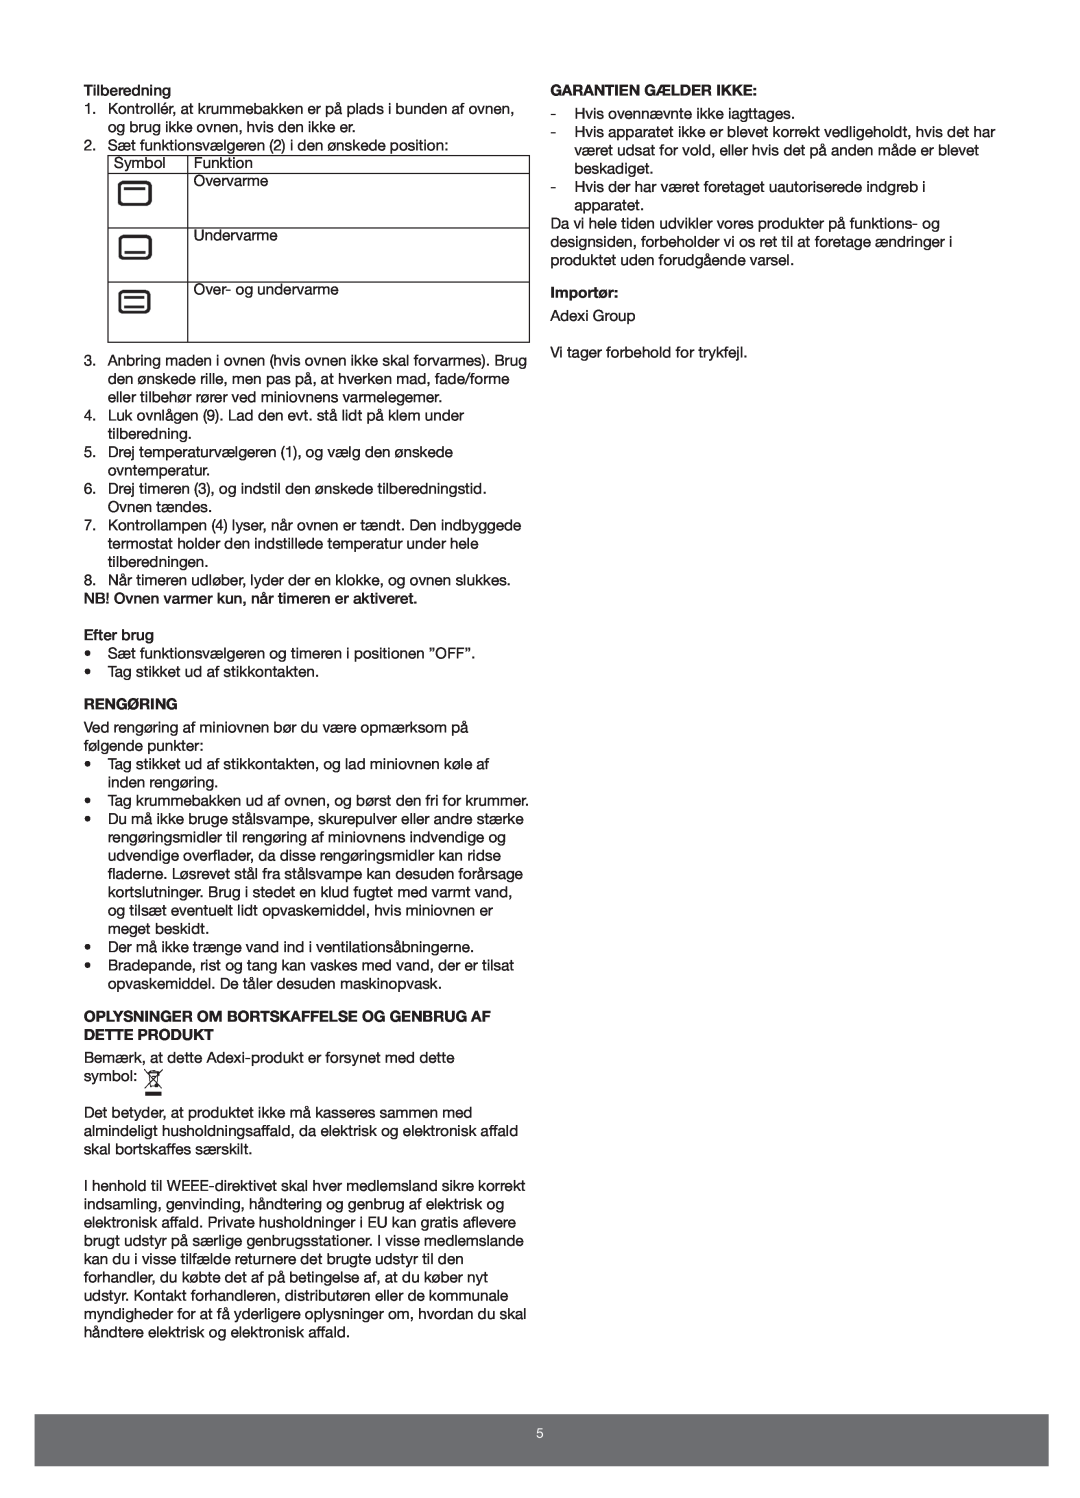 Melissa 651-007 manual Rengøring, Oplysninger Om Bortskaffelse Og Genbrug Af Dette Produkt, Garantien Gælder Ikke, Importør 